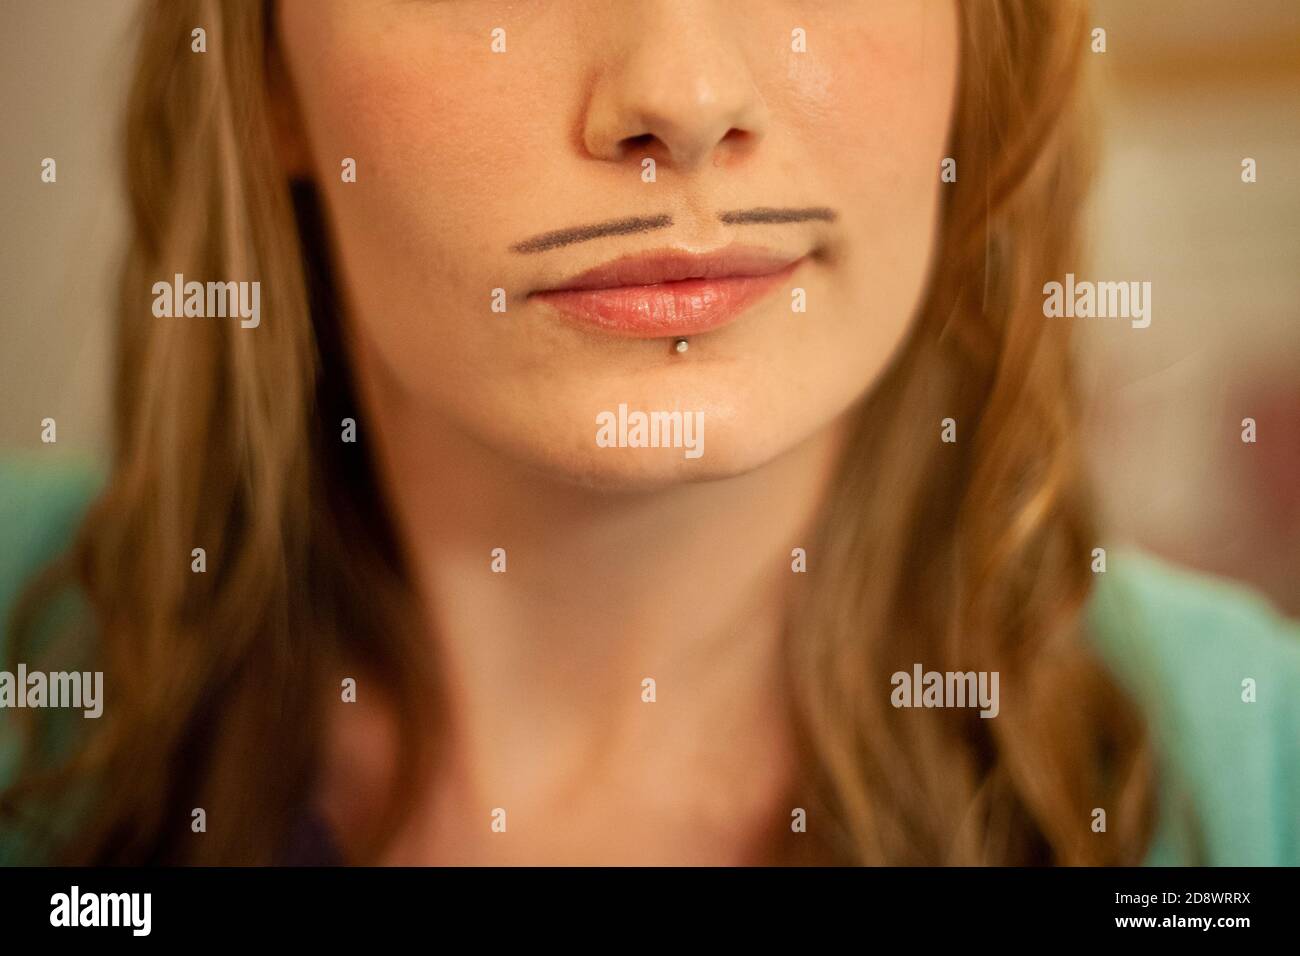 Primo piano della faccia inferiore della giovane donna, con una leggendaria caratteristica del viso disegnata: I baffi a matita, per Movember. Anche un piercing labbro. Foto Stock